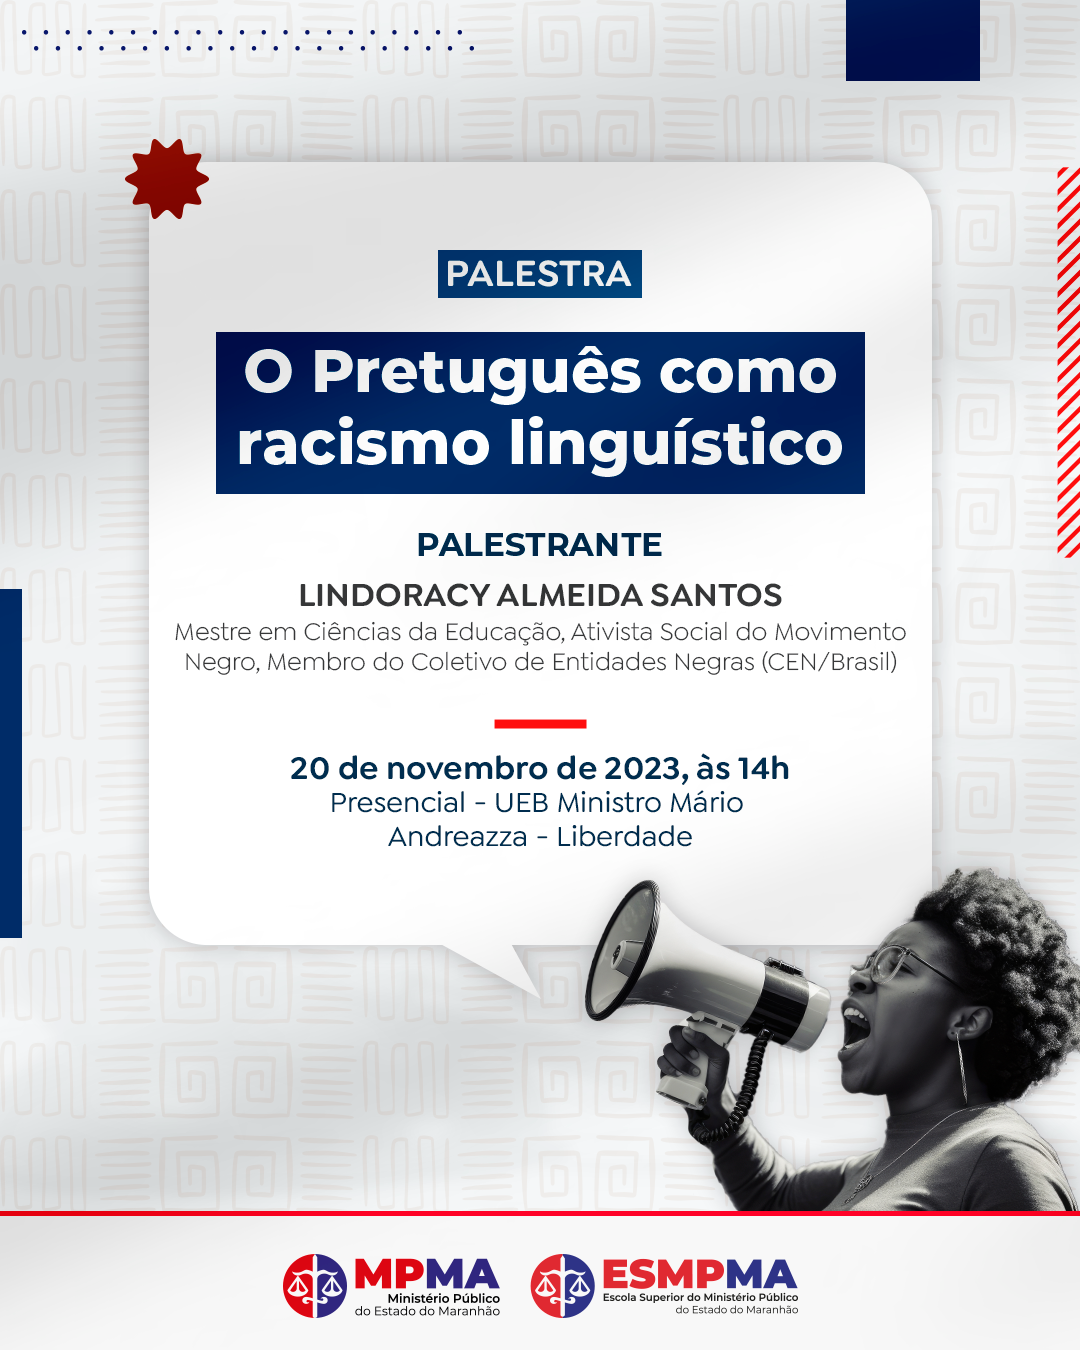 Palestra "O Pretuguês como Racismo linguístico"